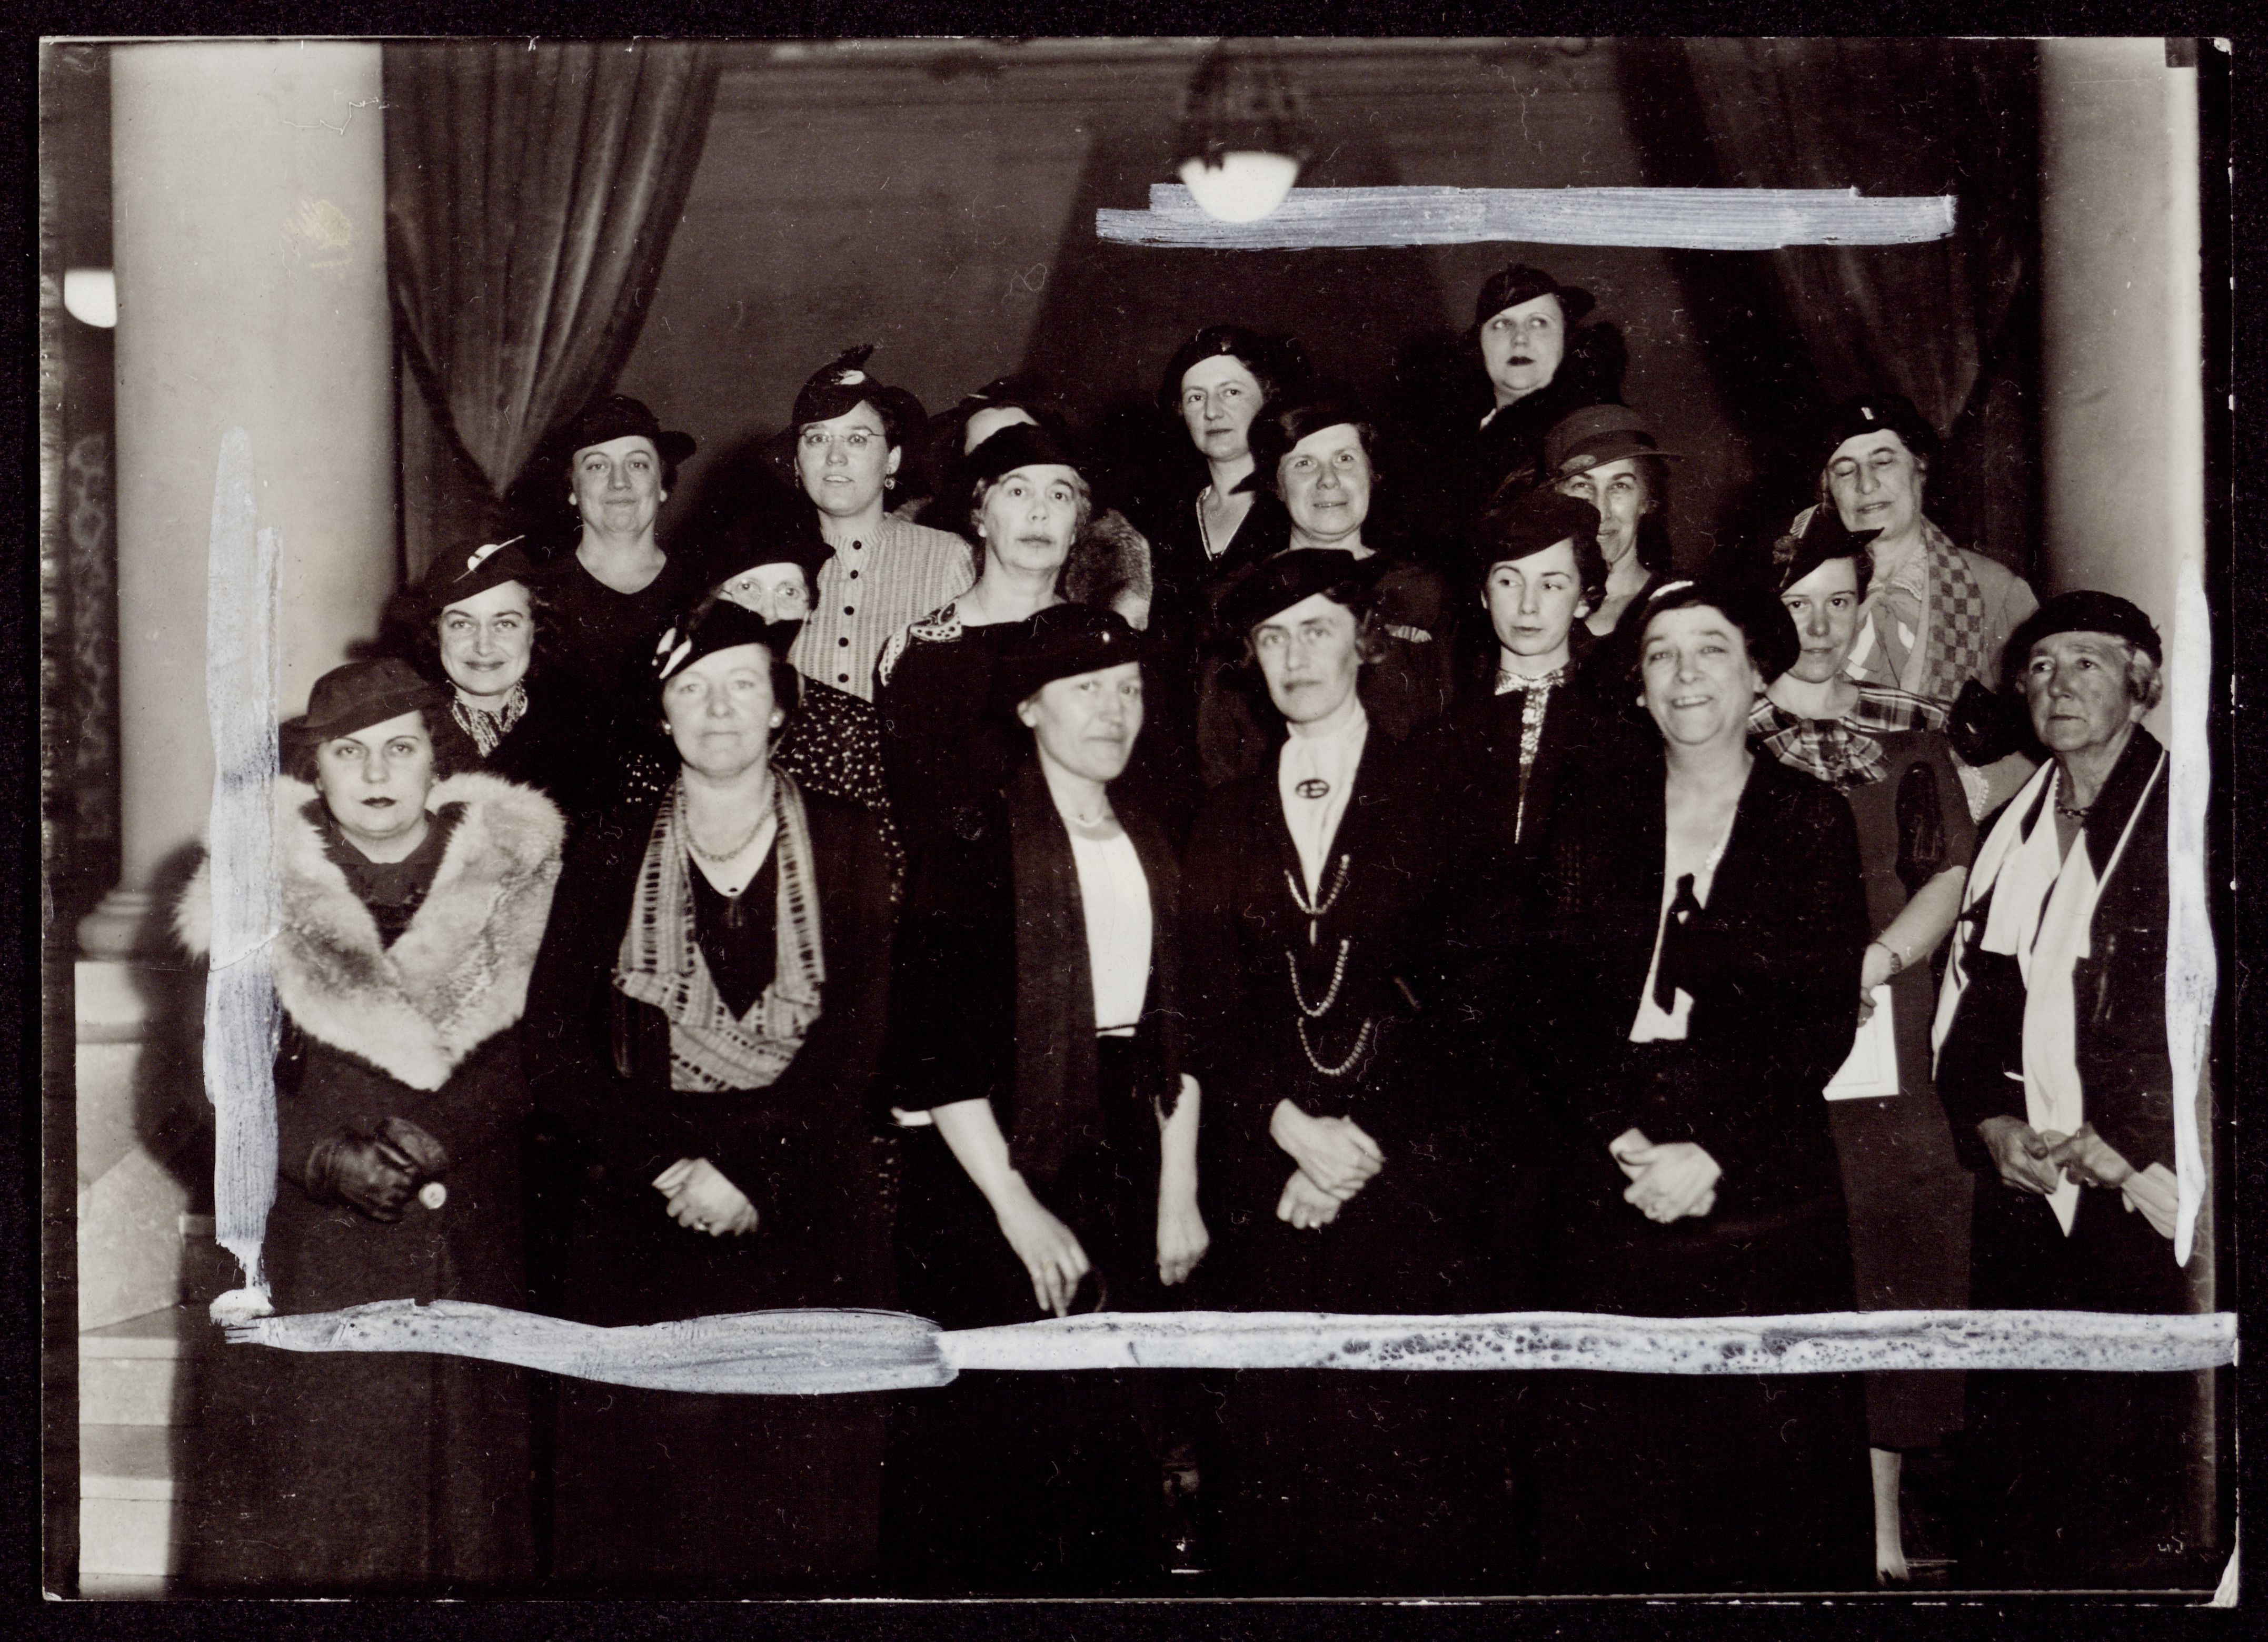 Les représentantes de la Ligue des droits de la femme en 1935